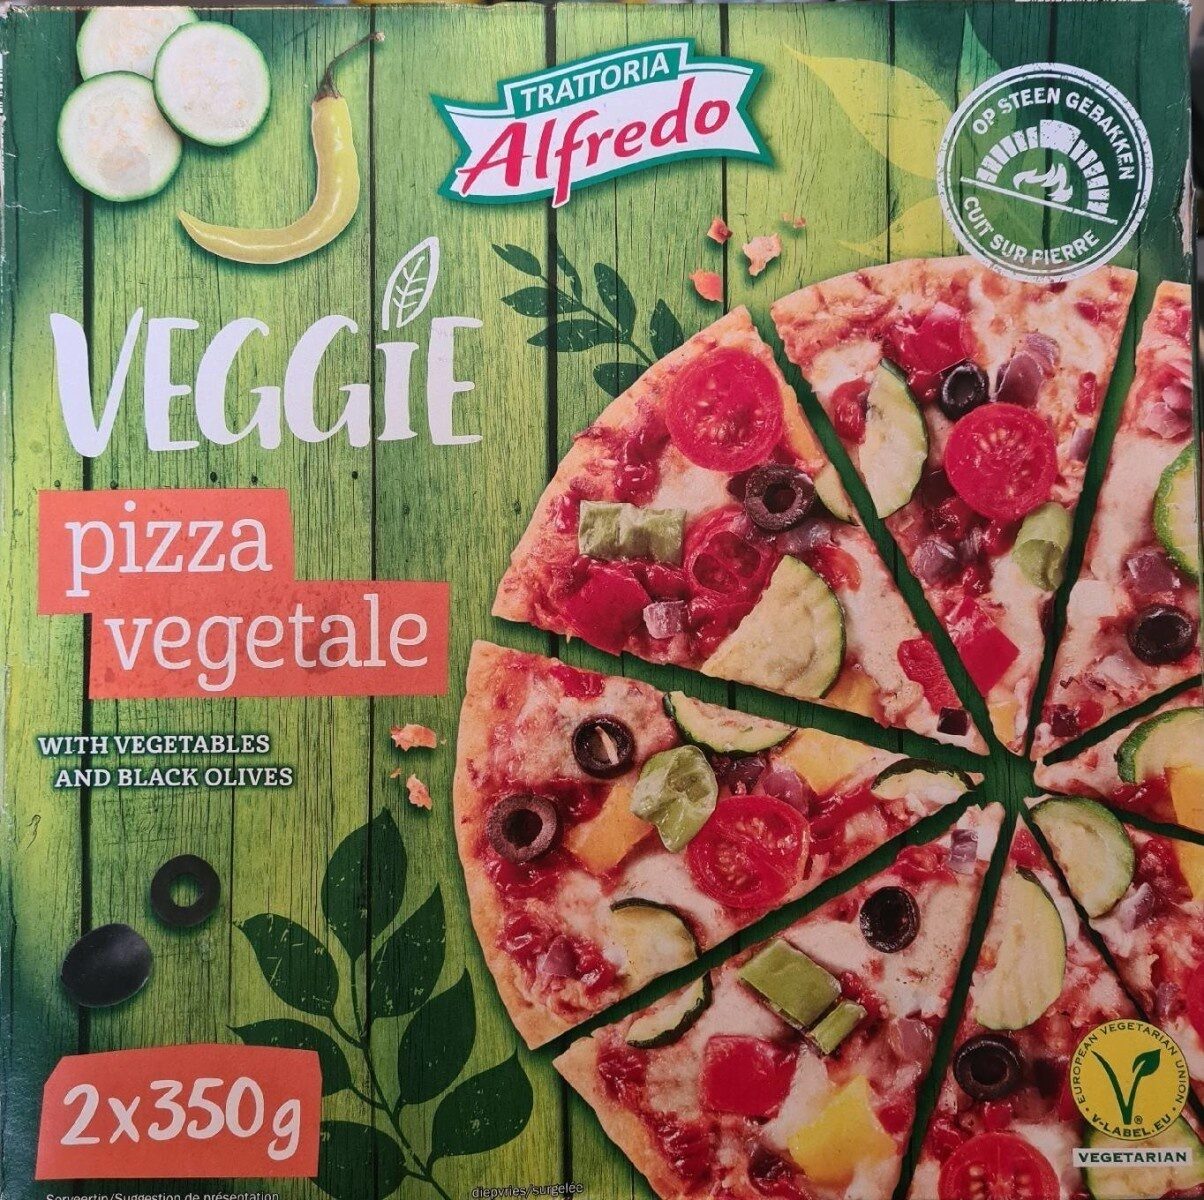 Pizza Veggie with vegetables and black olives - Produkt - de